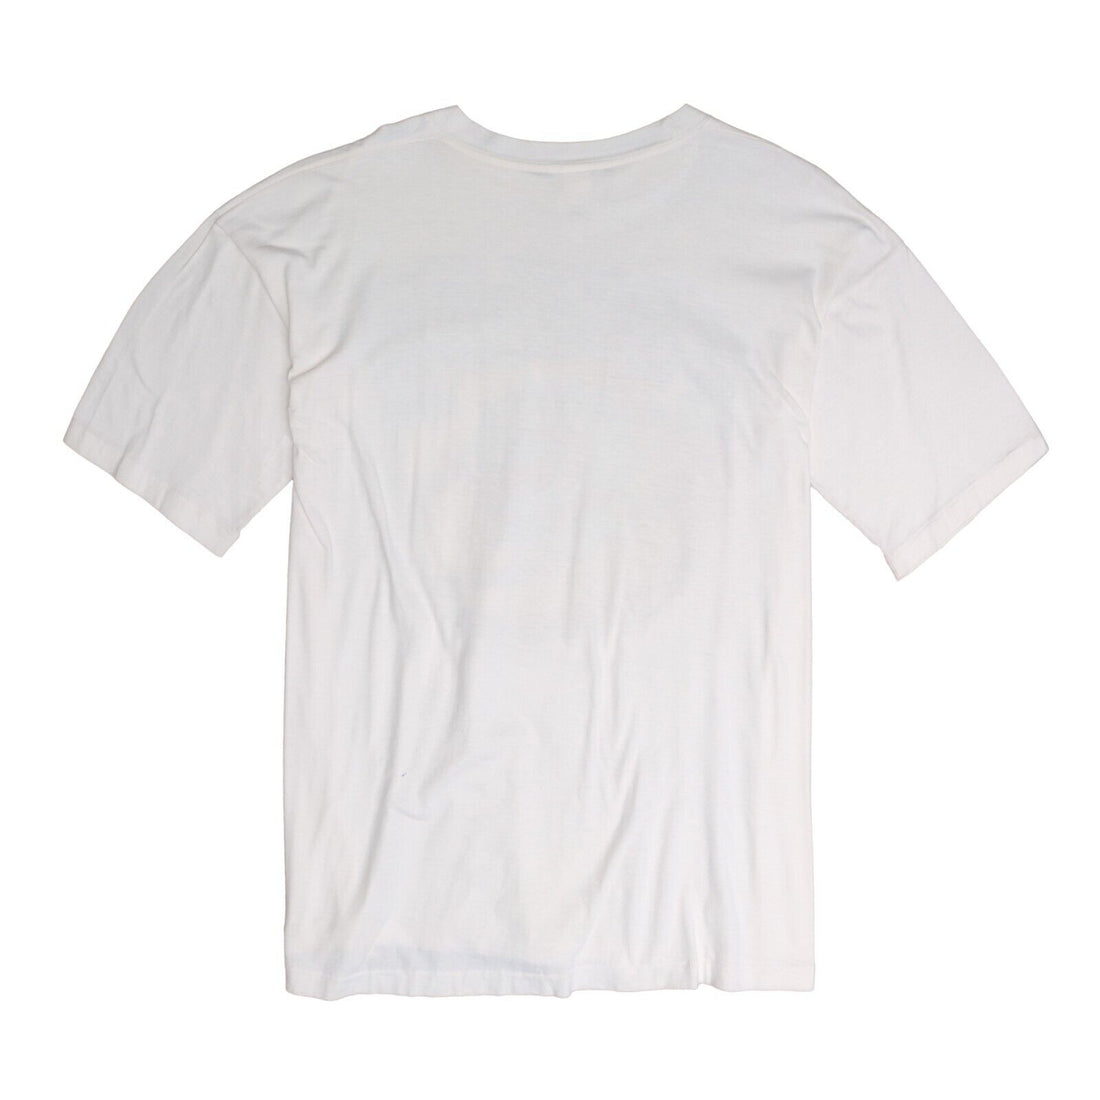 Vintage Toronto Raptors Basketball T-Shirt Size XL White 90s NBA